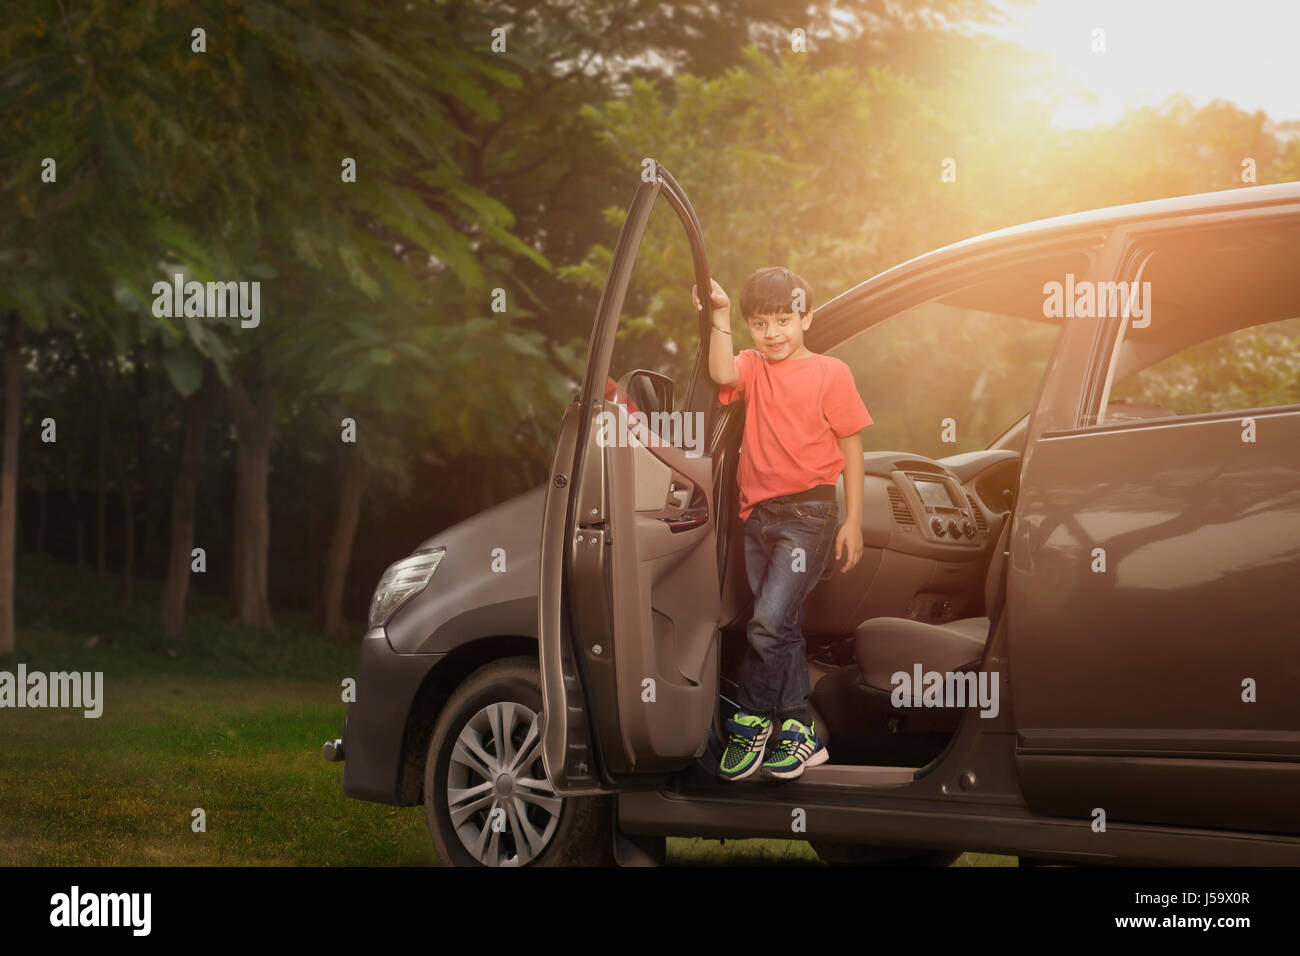 Boy standing in car doorway In park Stock Photo